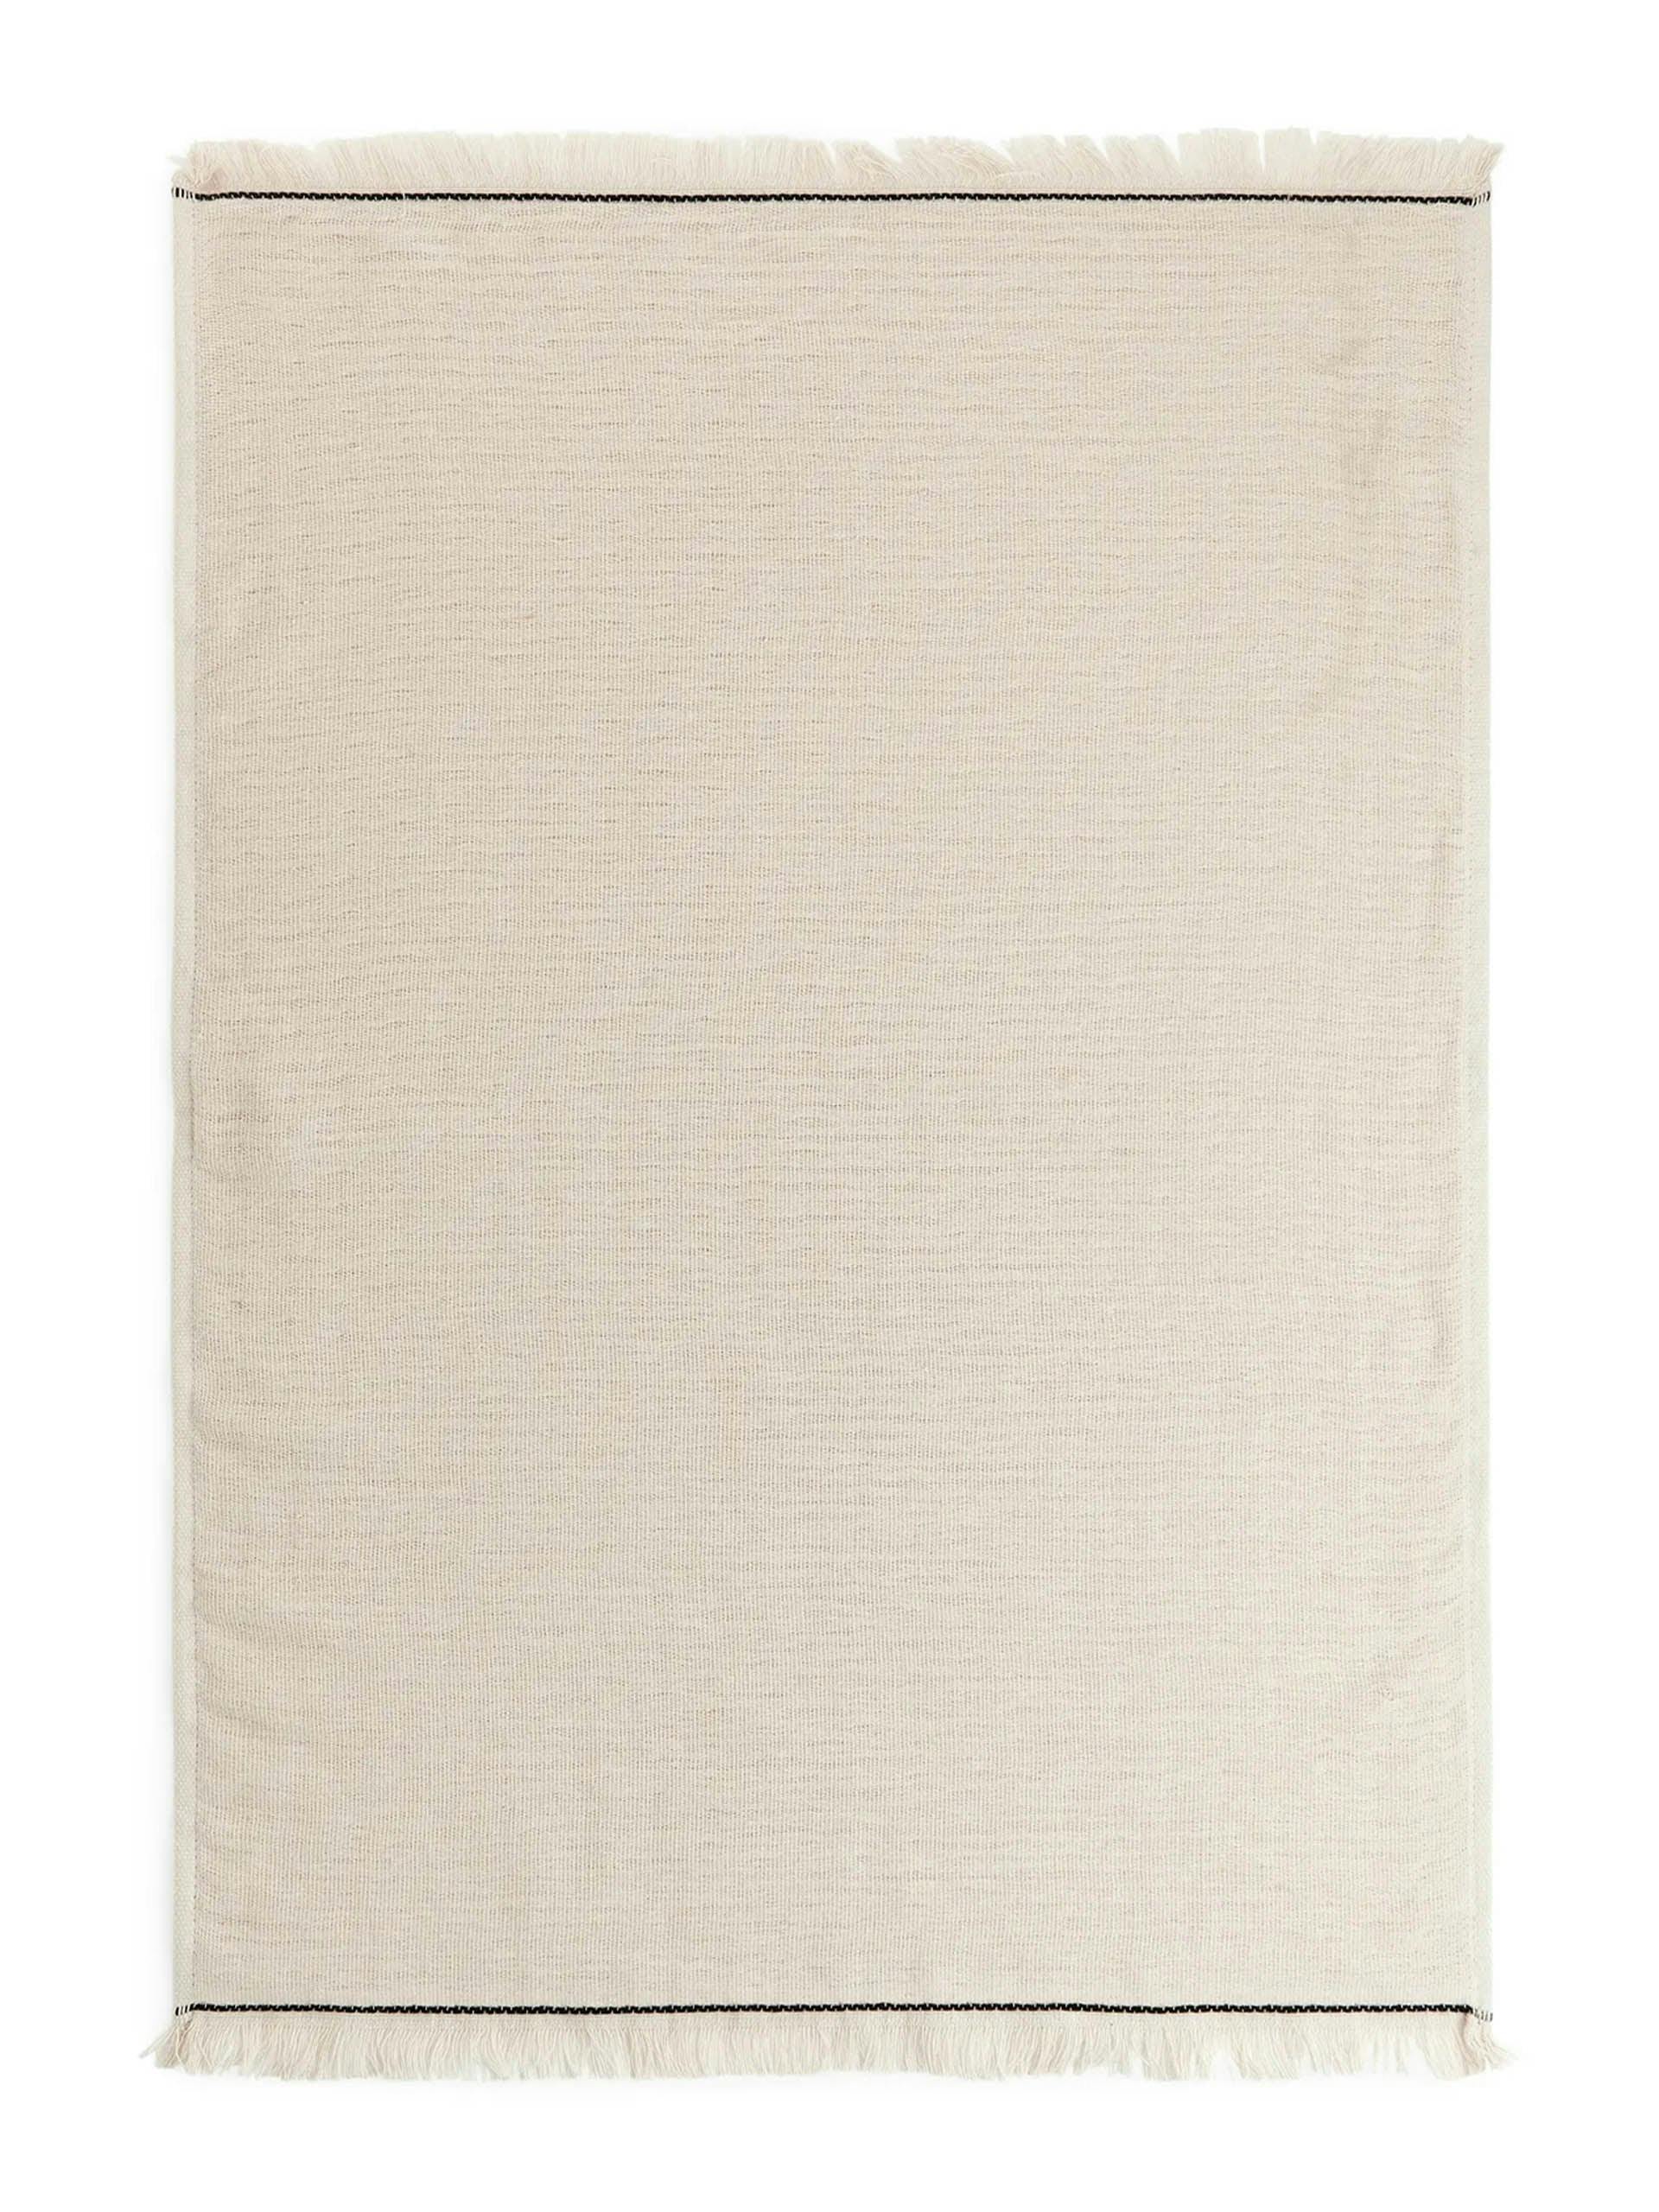 Beige cotton hand towel